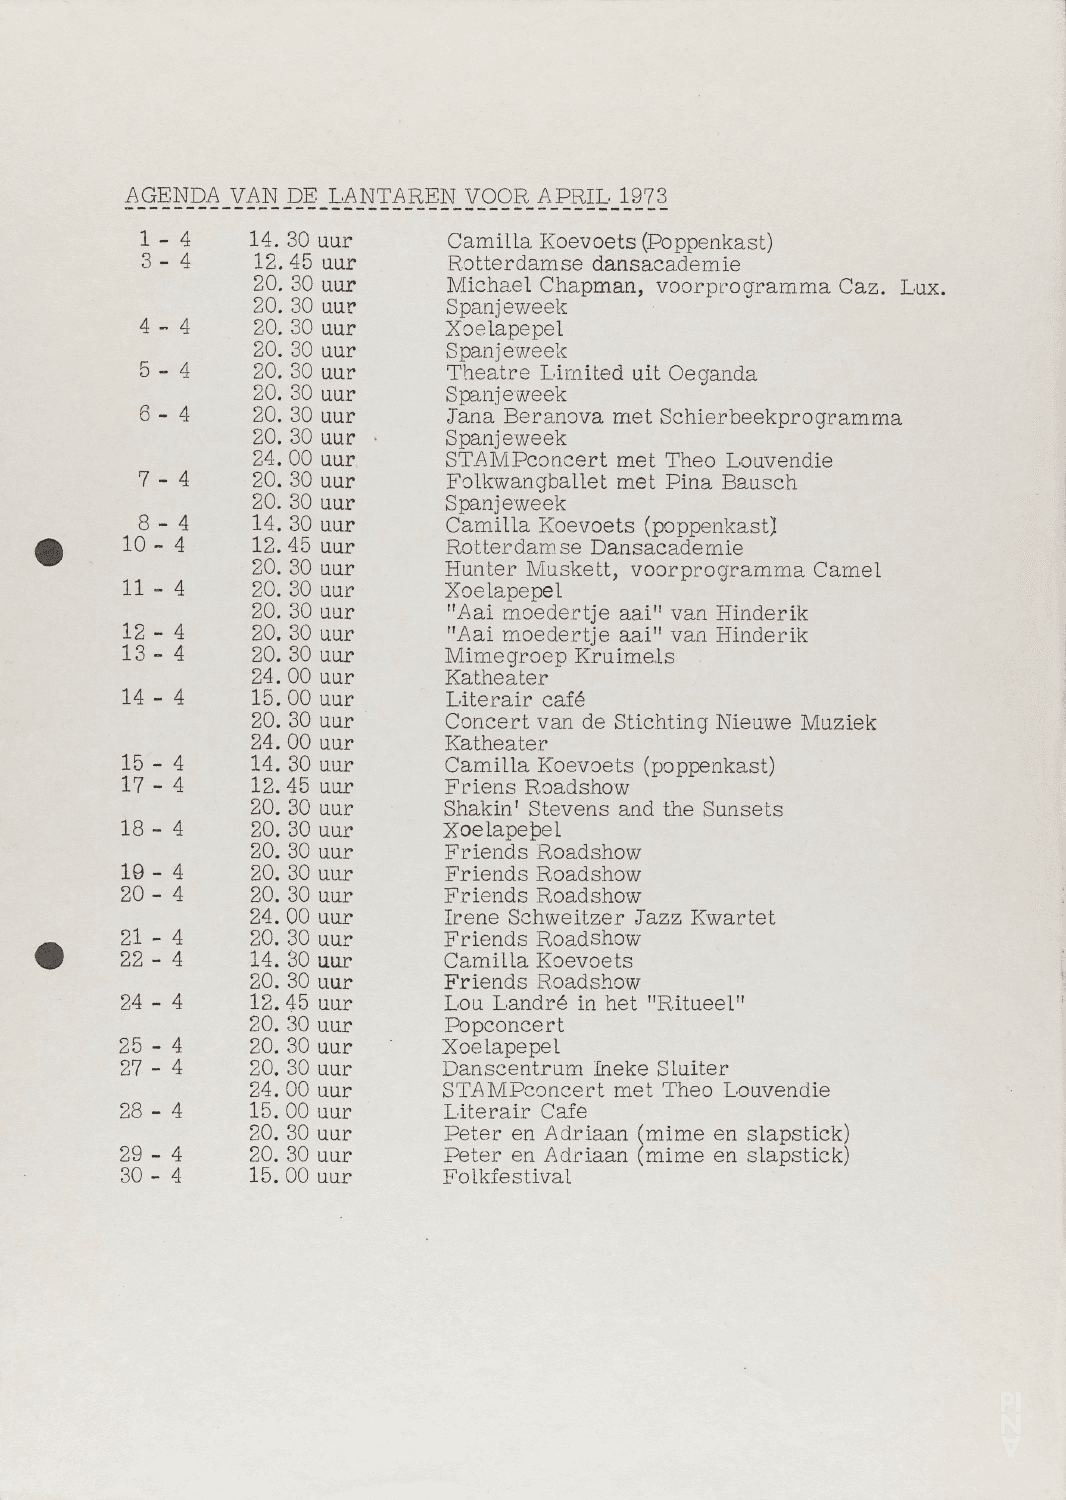 Season programme for “Nachnull (After Zero)”, “Aktionen für Tänzer”, “PHILIPS 836 885 DSY” and more by Pina Bausch with Folkwangballett in in Rotterdam, April 7, 1973